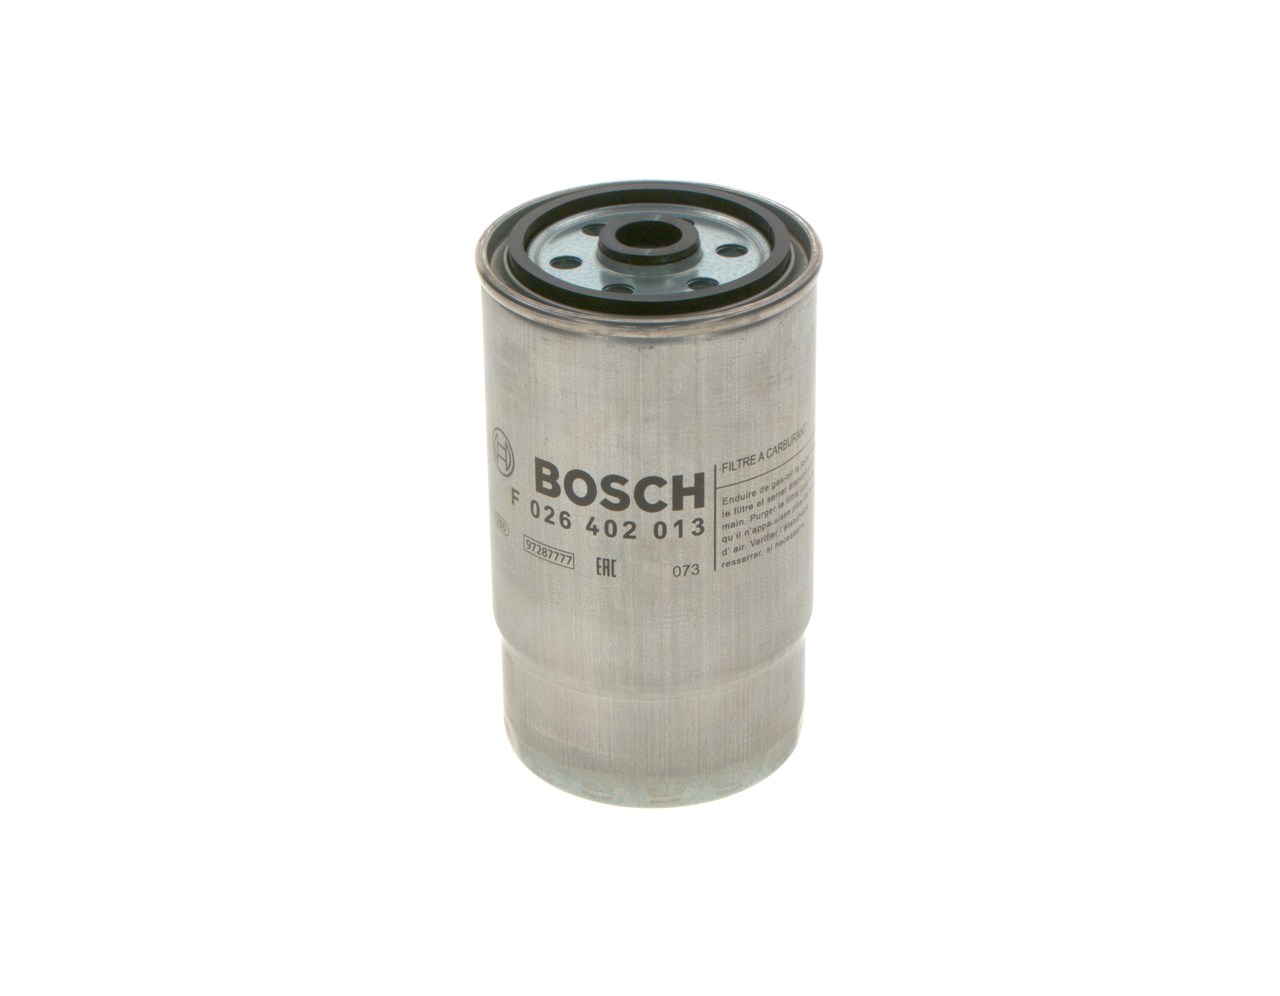 BOSCH F 026 402 013 Fuel filter Spin-on Filter